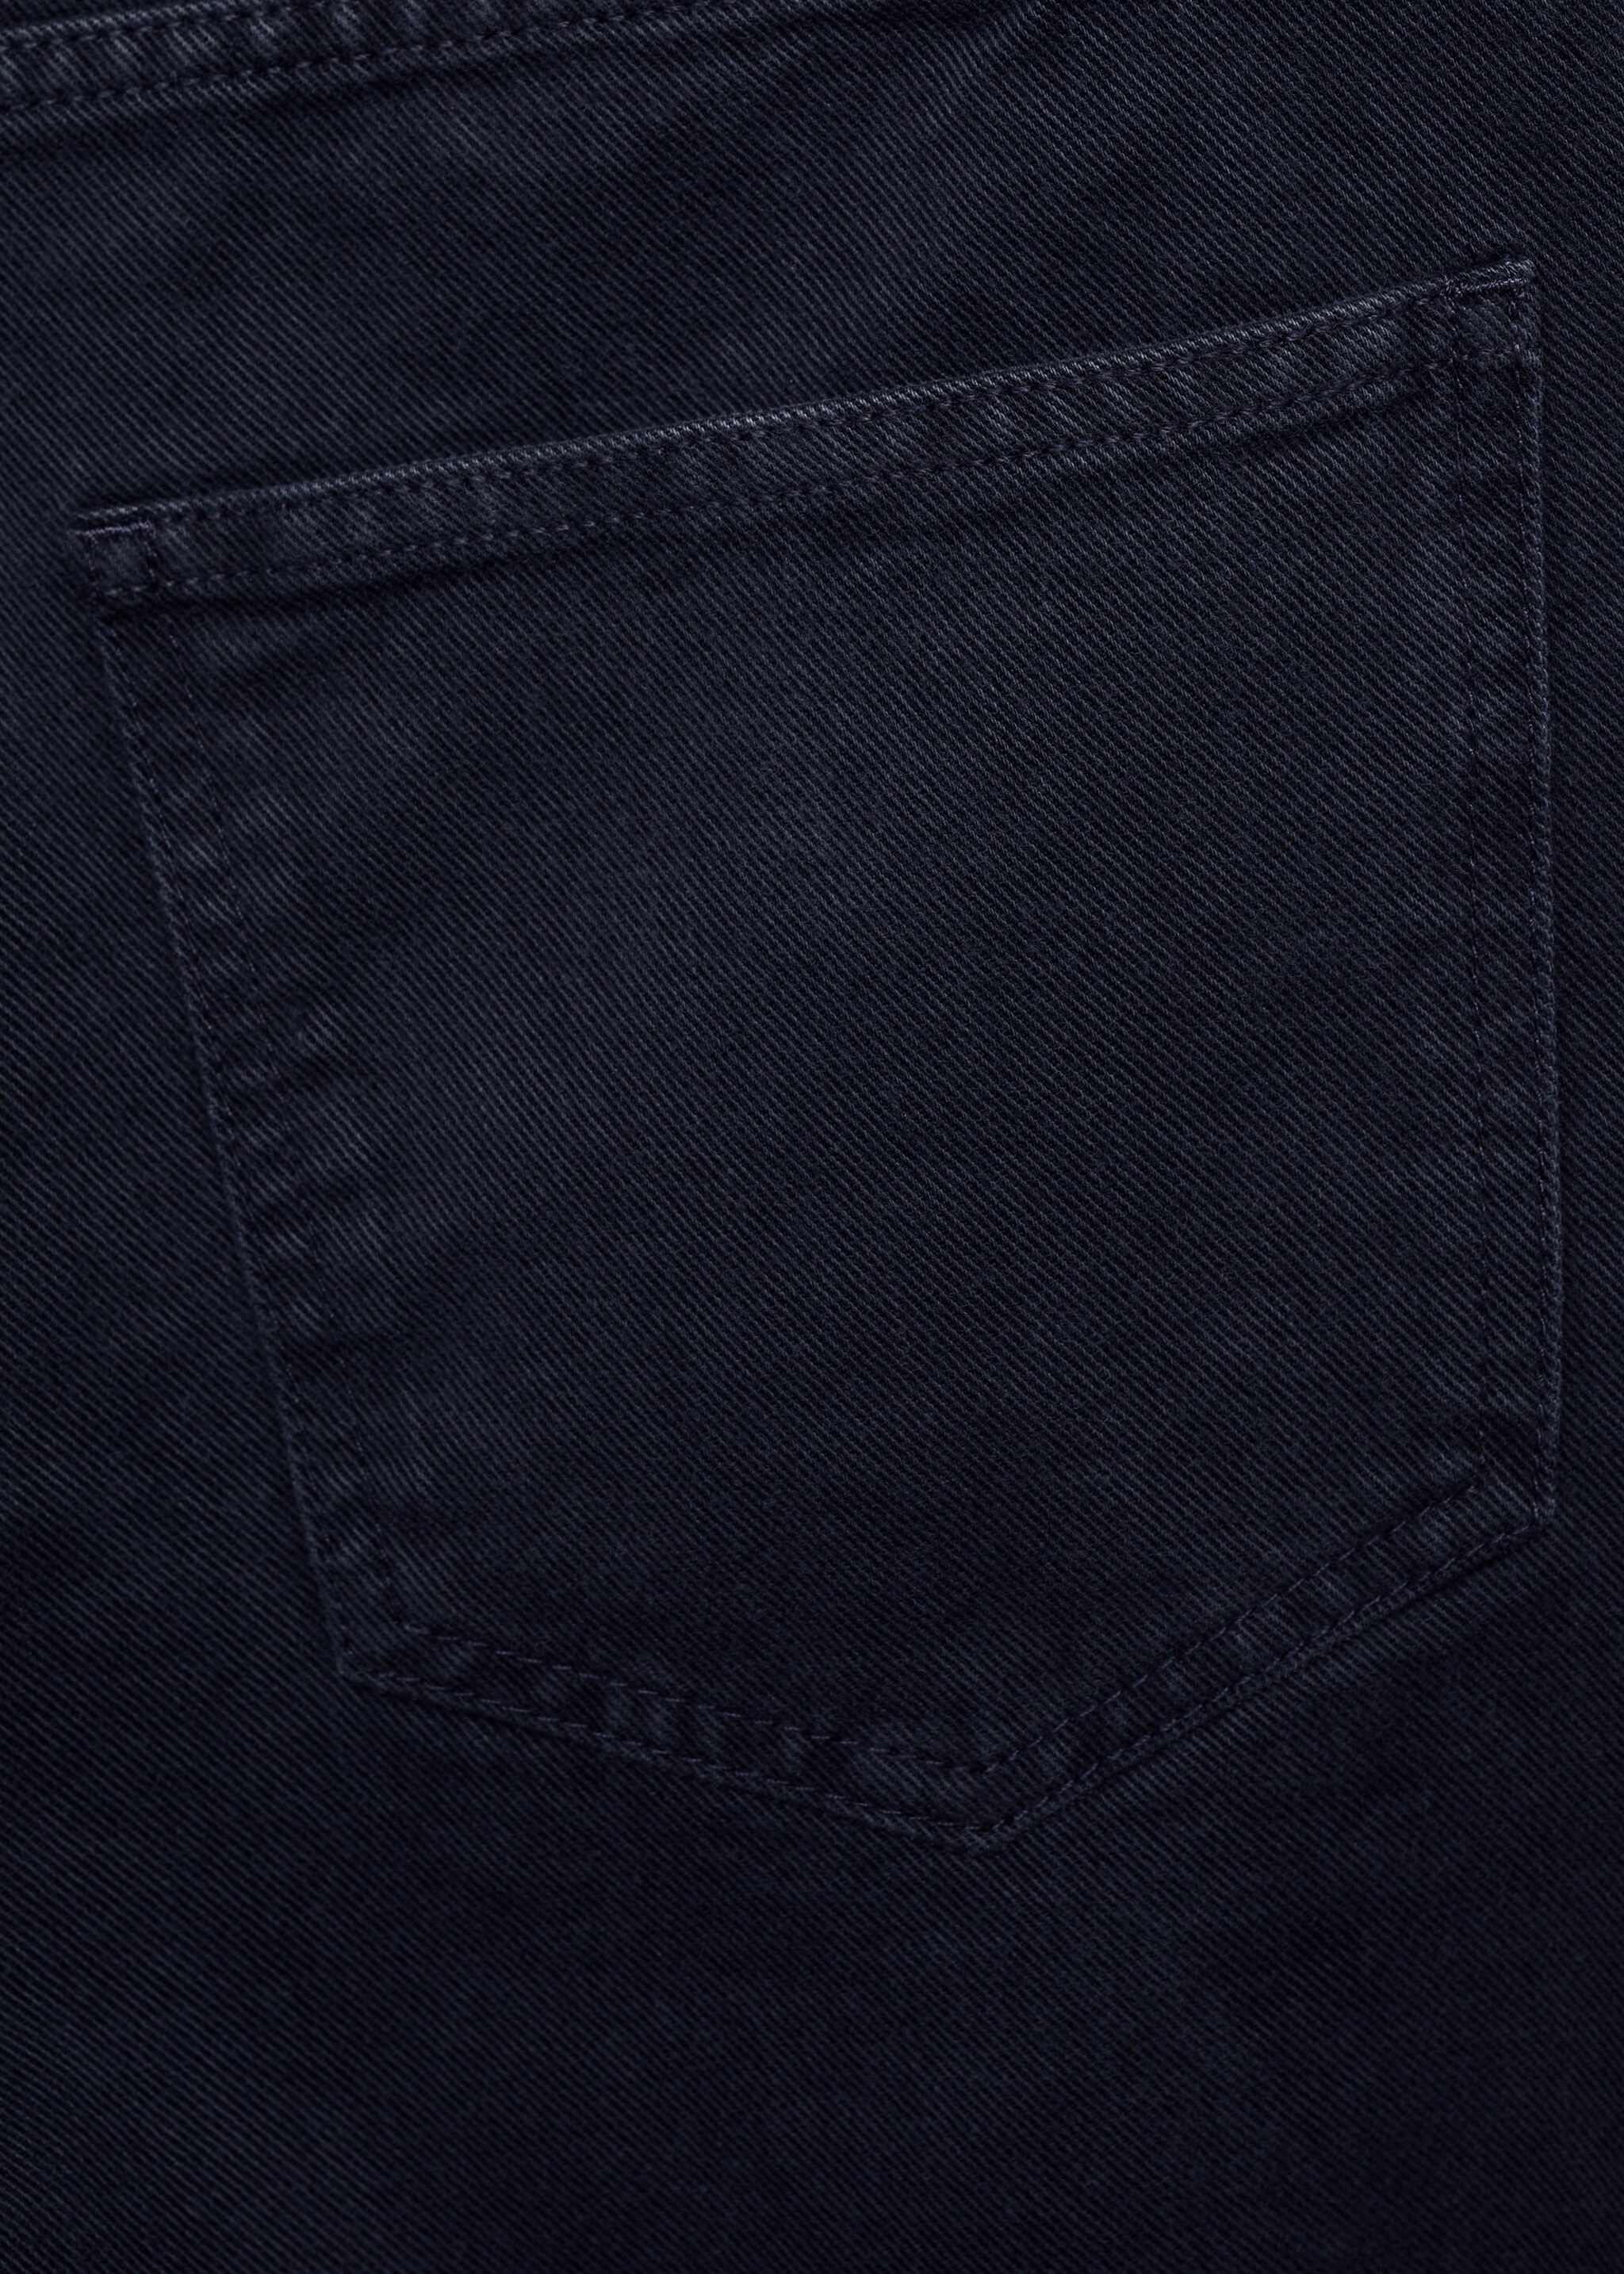 جينز مدبب - تفاصيل المنتج 0